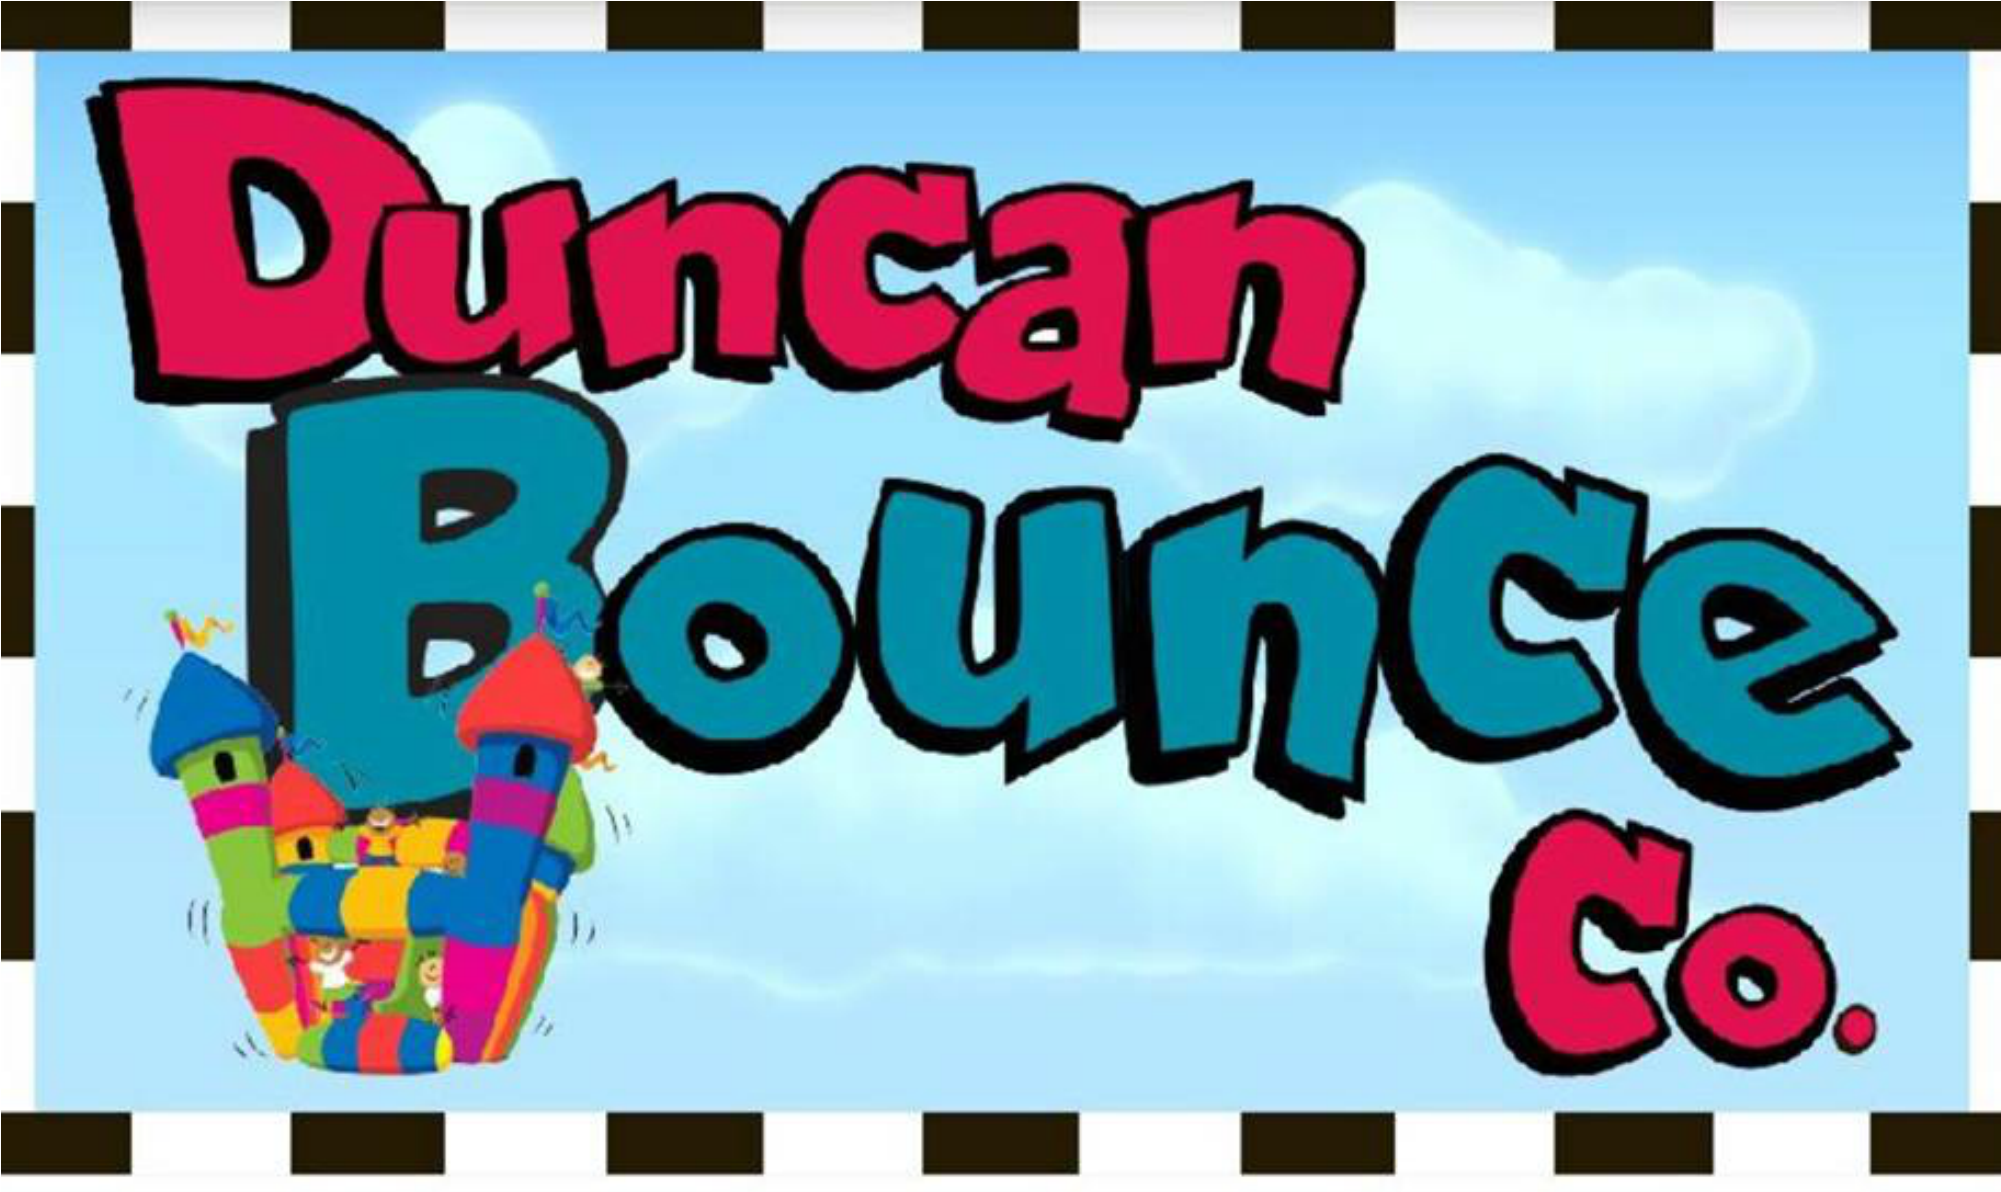 Duncan Bounce Co (2000x2000)